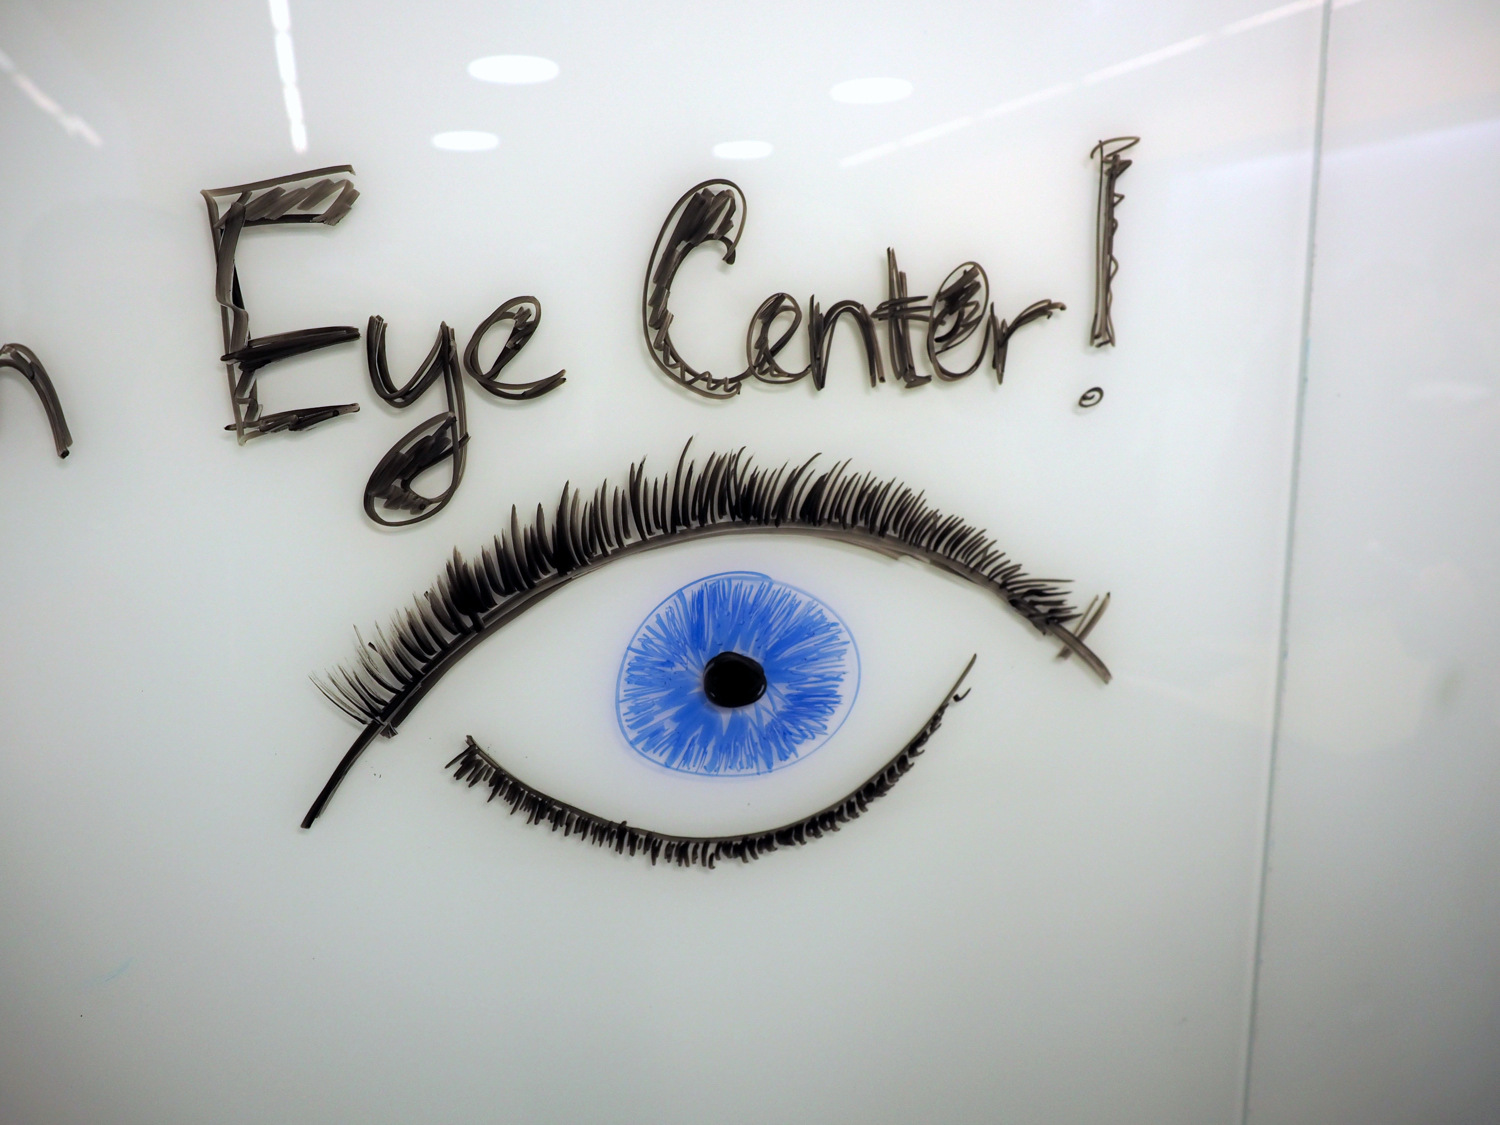 2020 “Design the Dream Eye Center”